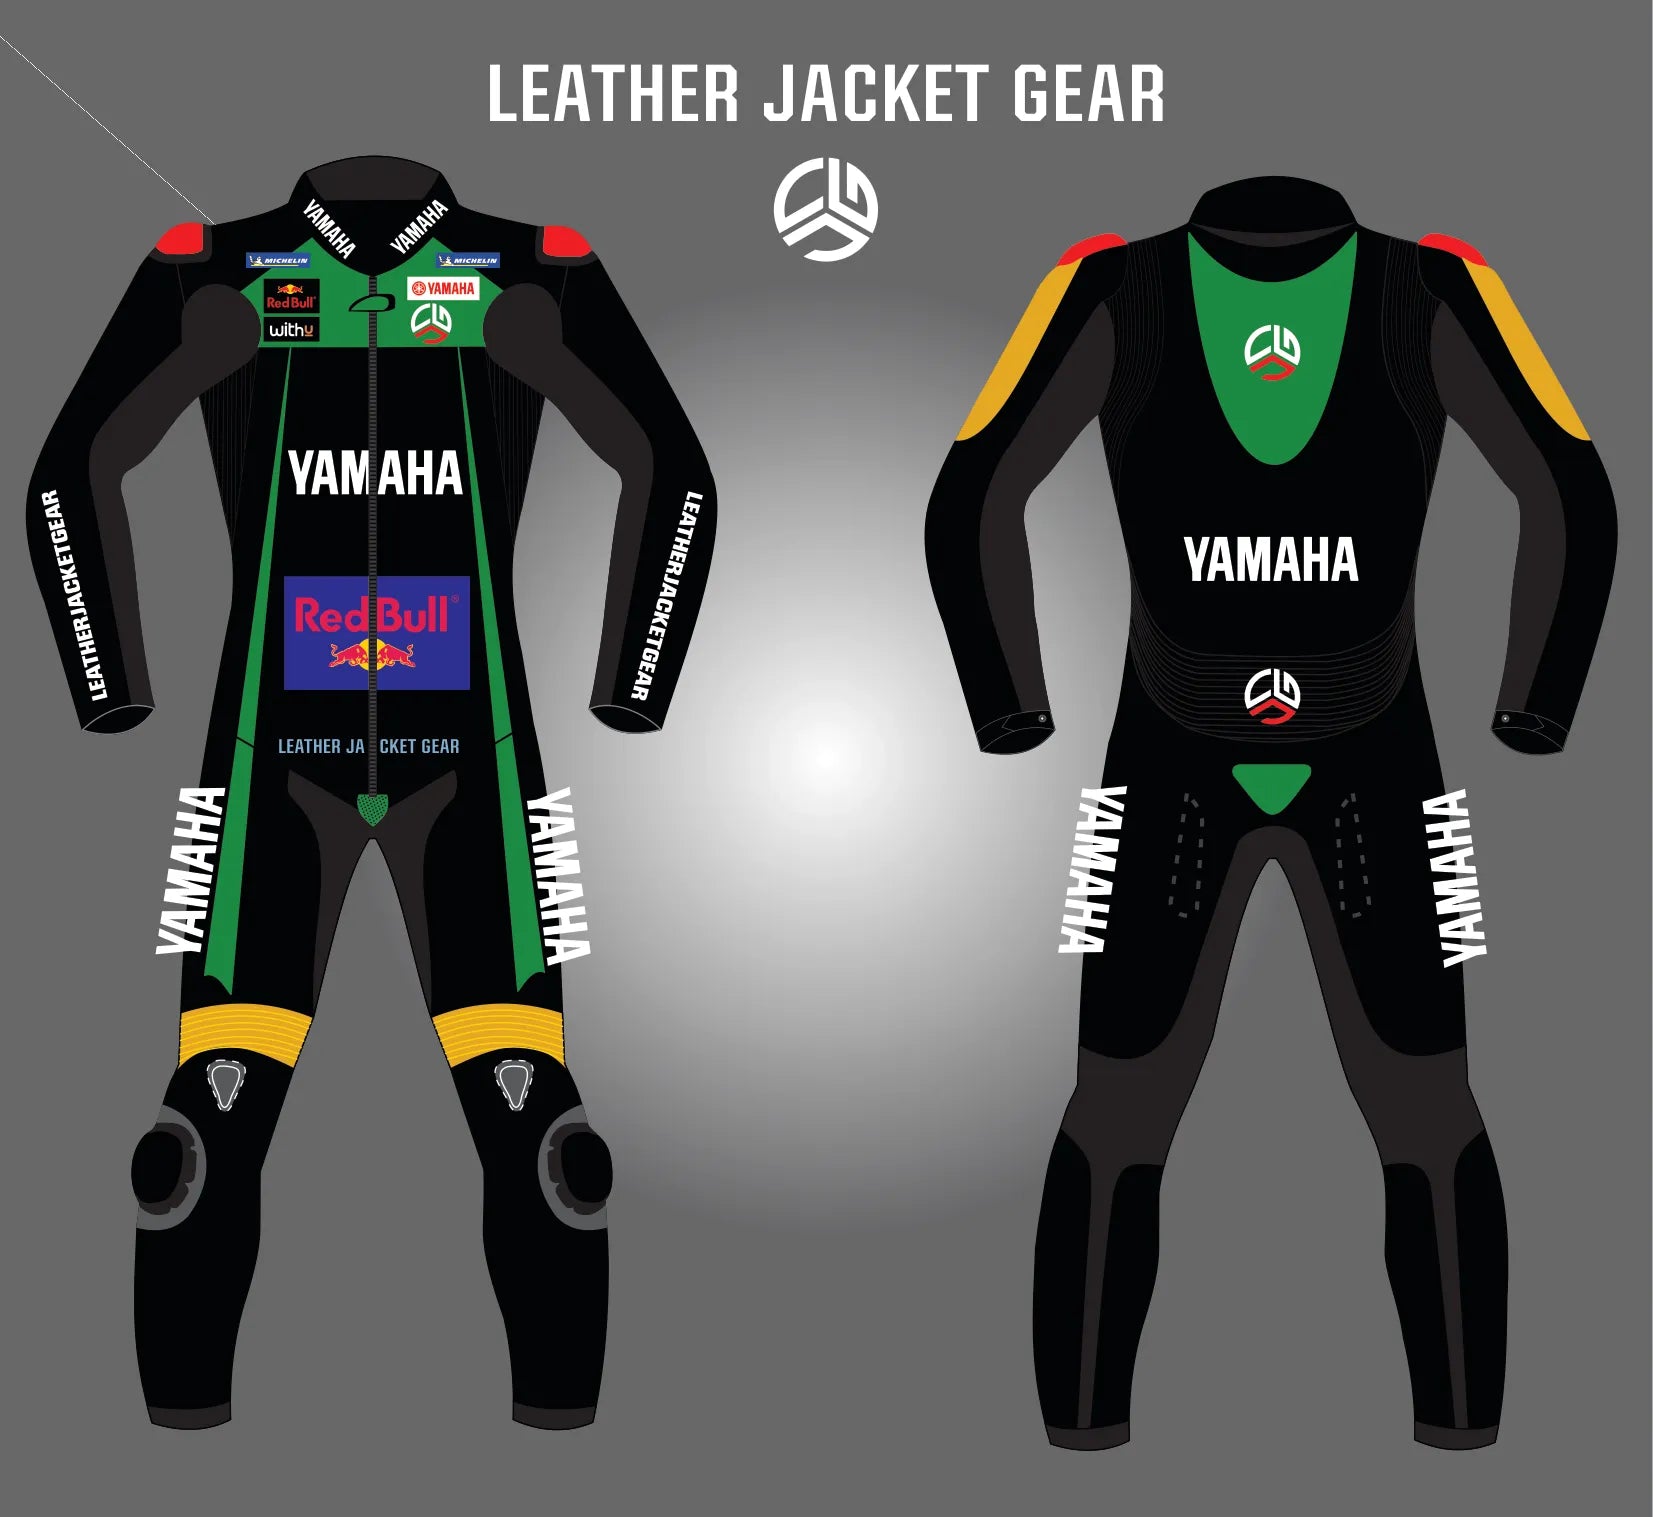 LeatherJacketGear-Black-Grey-Green-Race-Suit